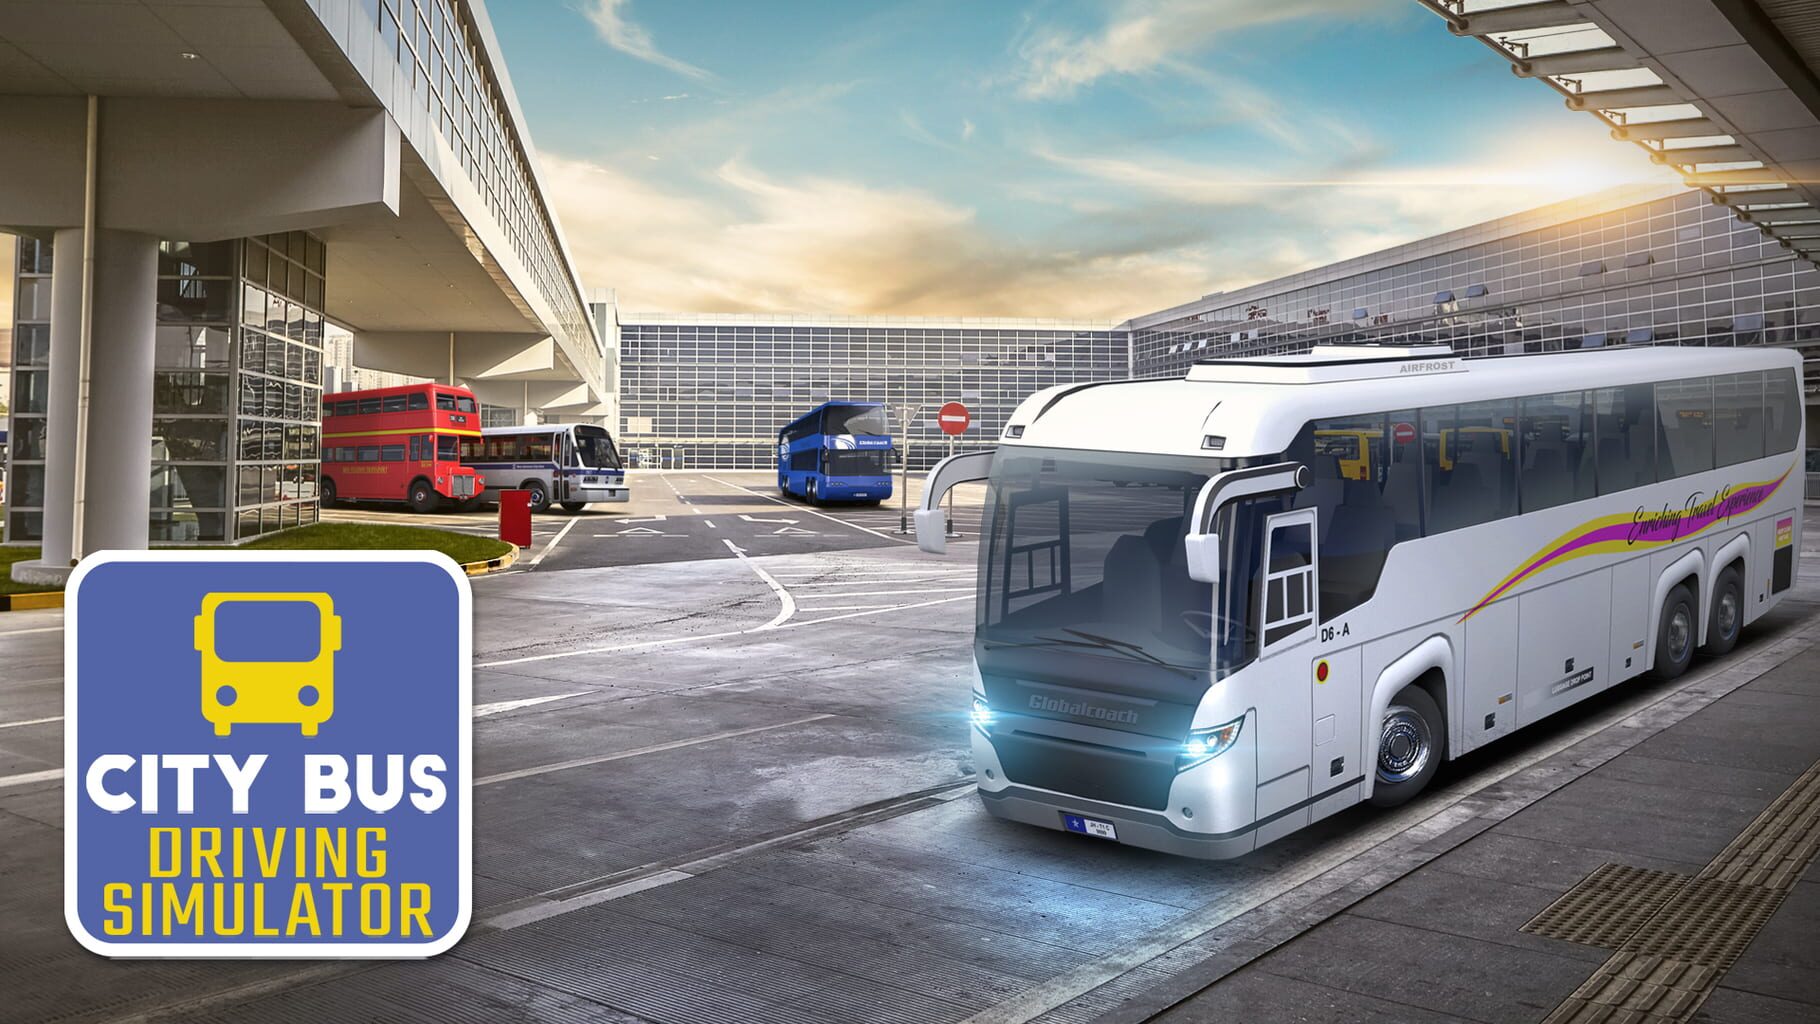 City Bus Driving Simulator artwork